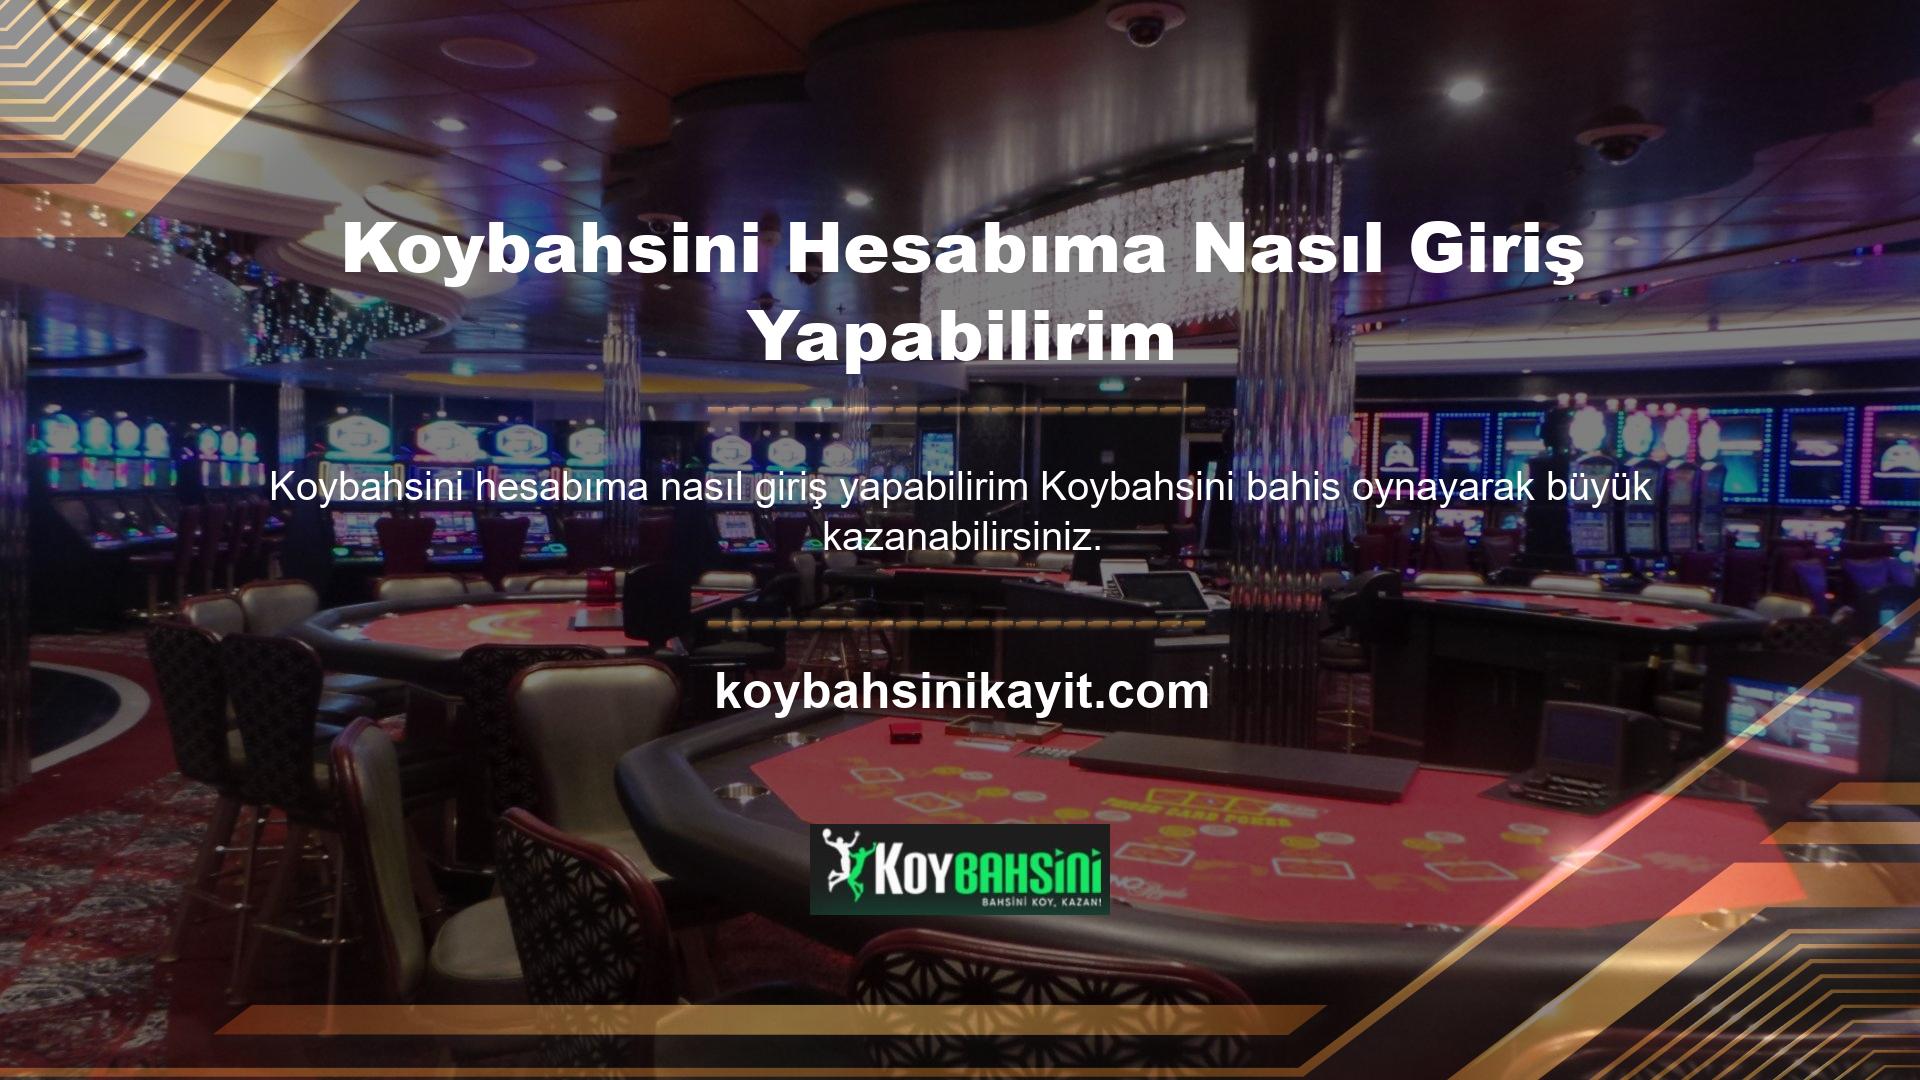 Çünkü Koybahsini, internet slot hızına ulaşmış güvenilir bir bahis sitesidir